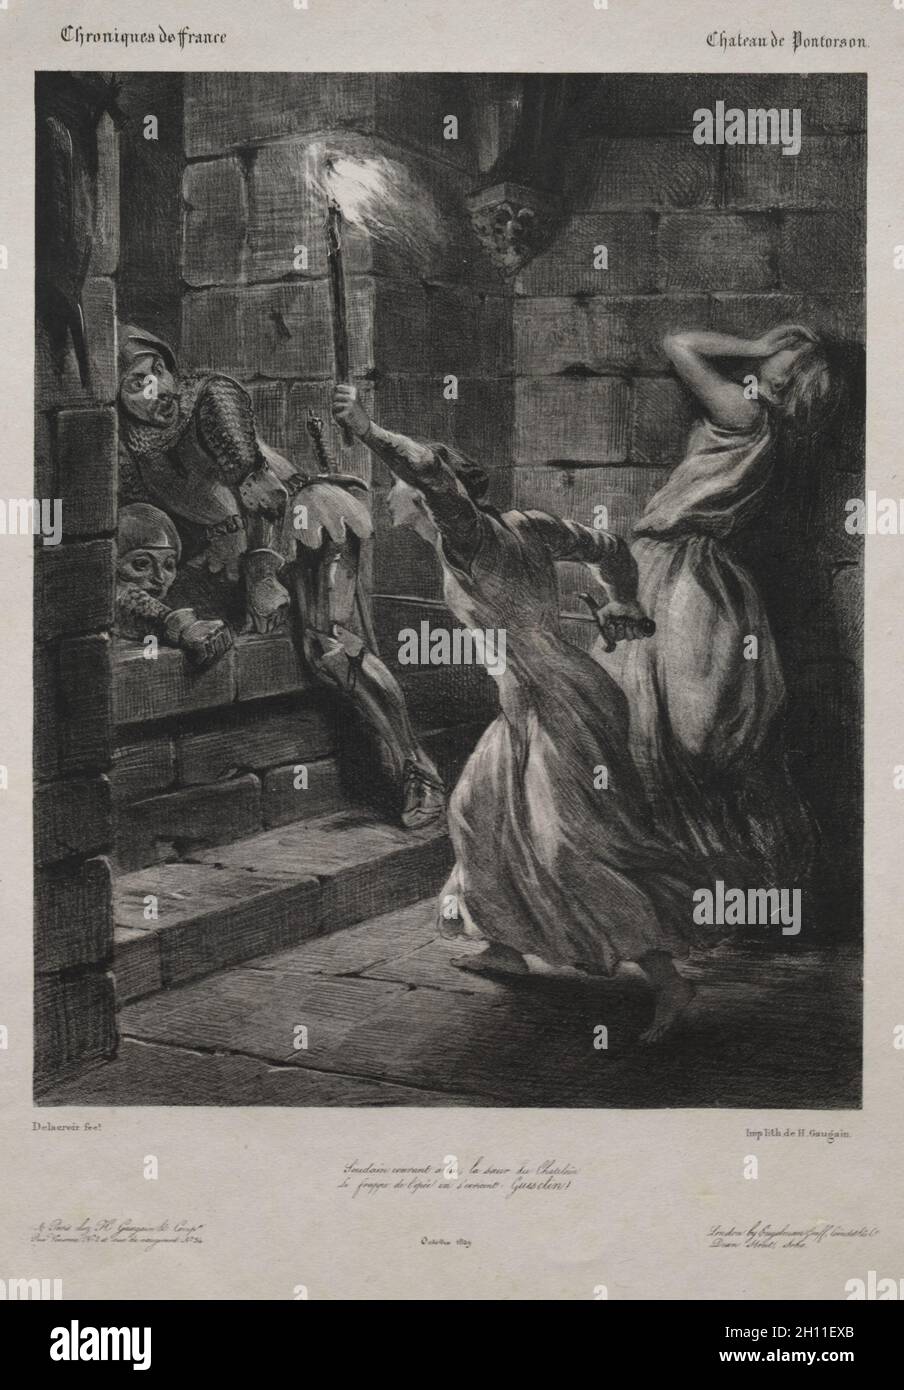 La sœur de Duguesclin, 1829.Eugène Delacroix (français, 1798-1863), H. Gaugain & Co. Et Engelman Graff, Coindet & Co.Lithographie avec colé de chine; feuille: 43 x 30.7 cm (16 15/16 x 12 1/16 po.); image: 25.2 x 20.1 cm (9 15/16 x 7 15/16 po.). Banque D'Images